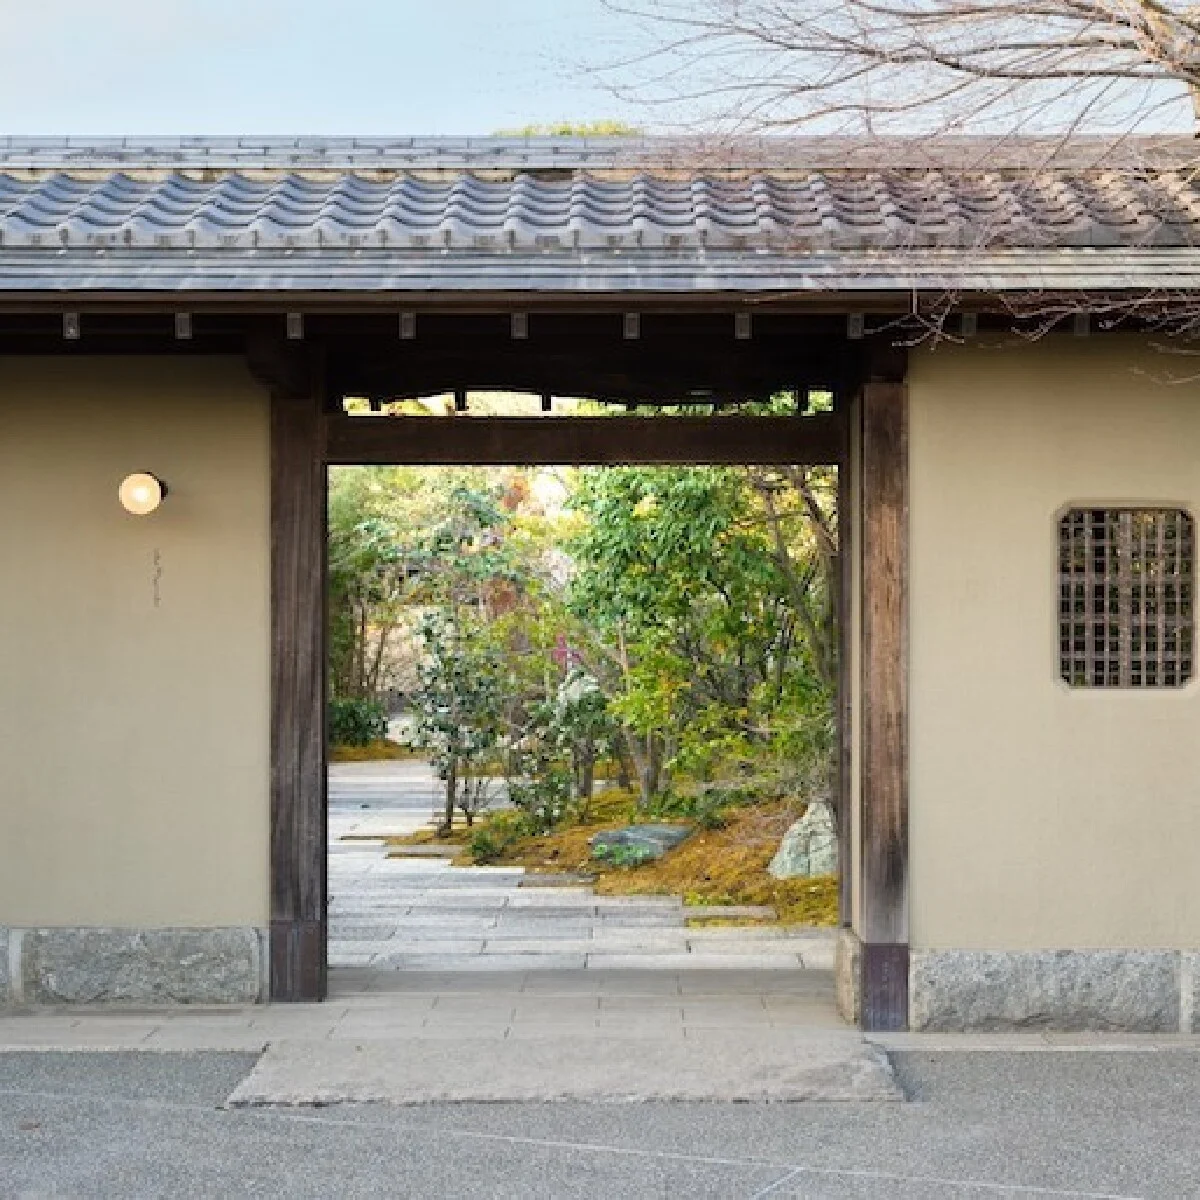 老舗料亭の歴史的建物と庭園が心身を癒すオーベルジュに。「Auberge TOKITO」、東京・立川にオープン